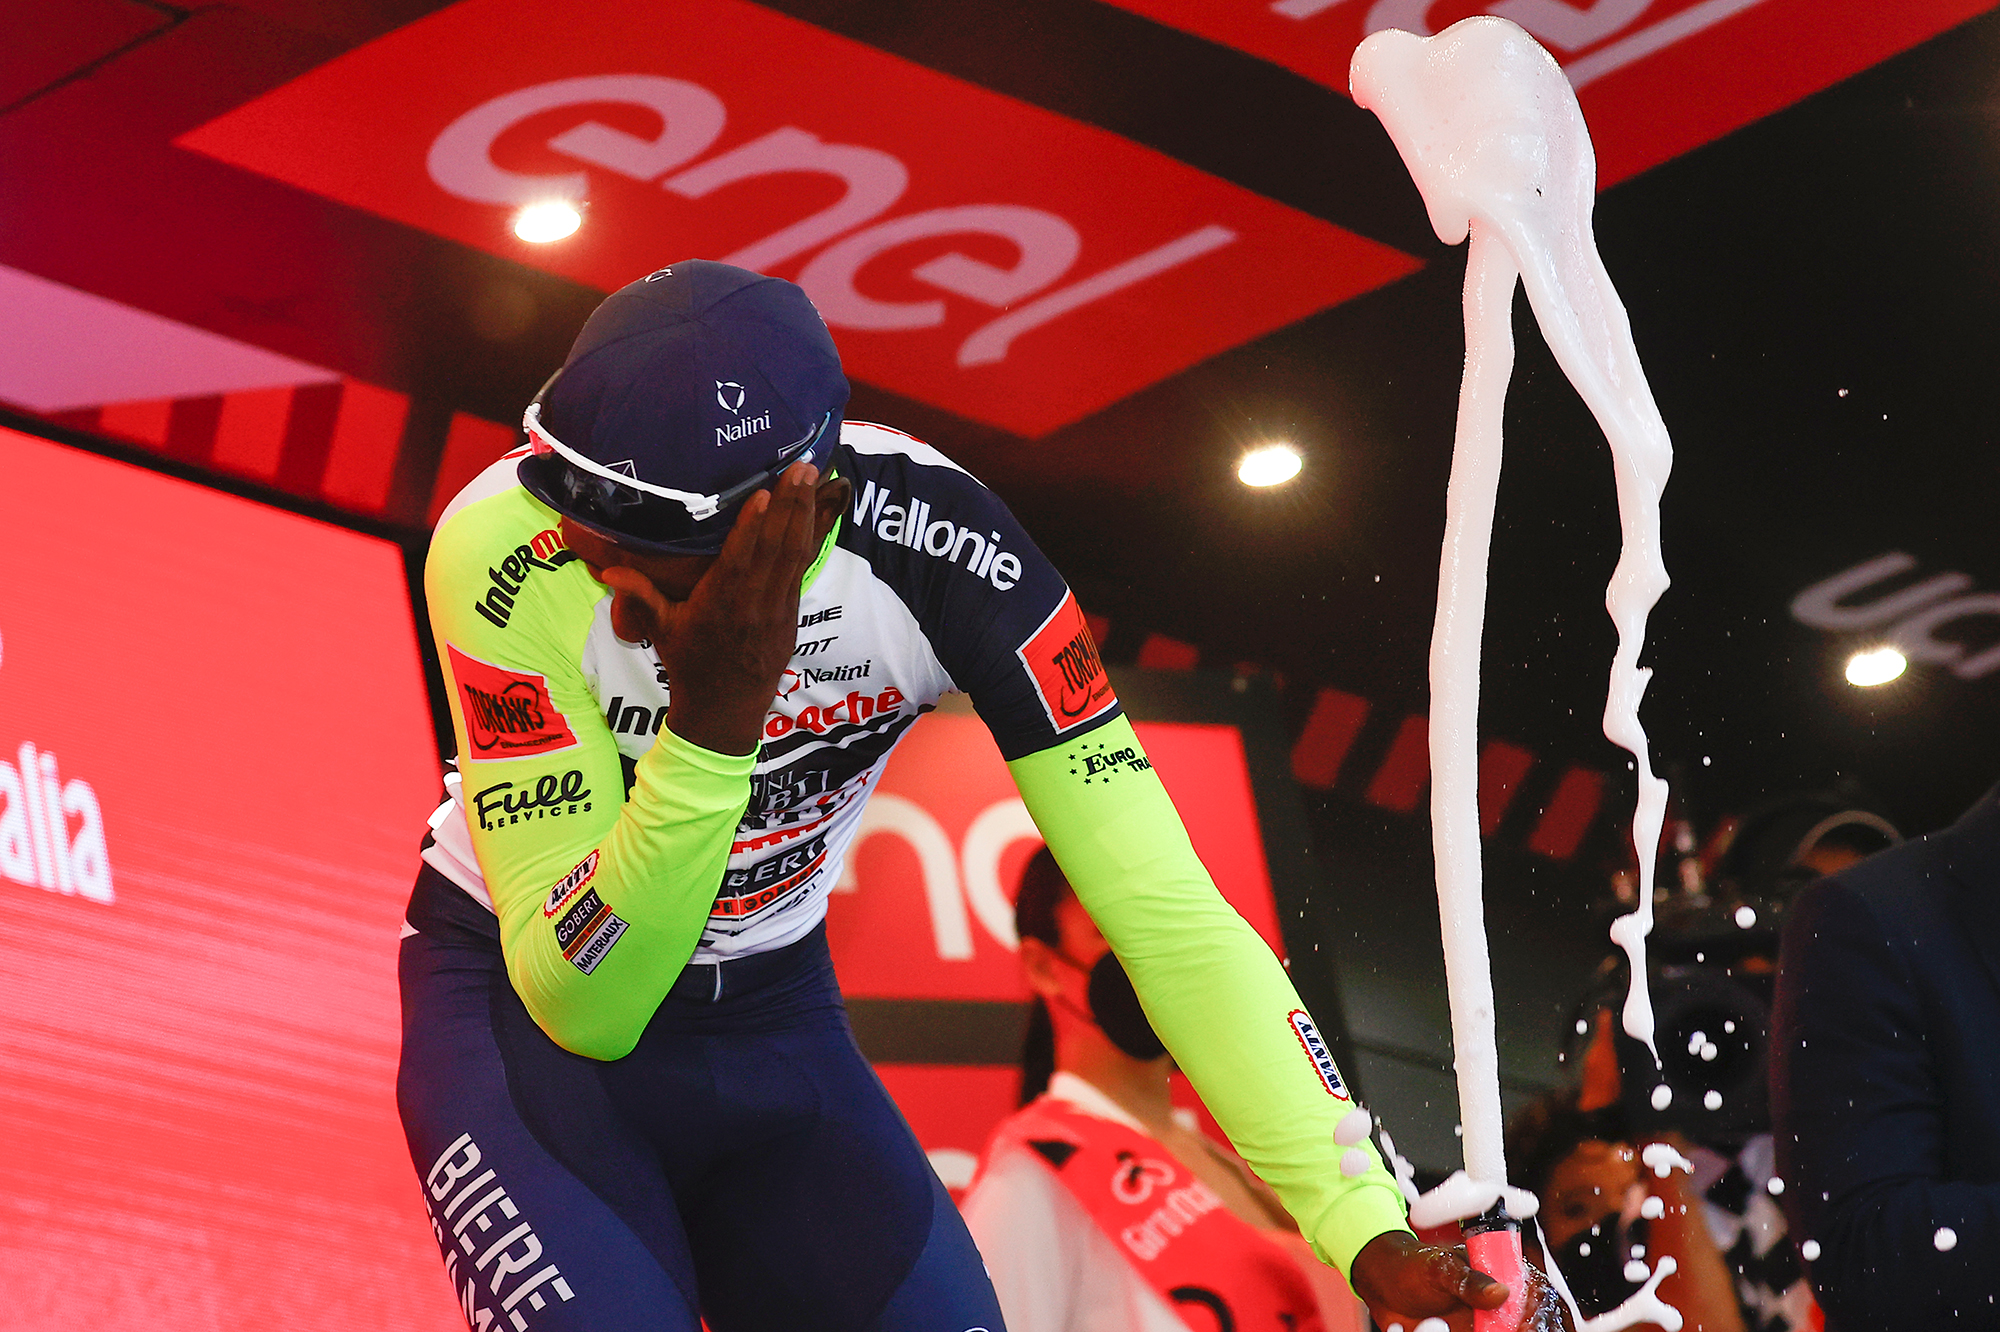 L'Erythréen Girmay passe d'une victoire historique au Giro à l'abandon à cause d'un bouchon